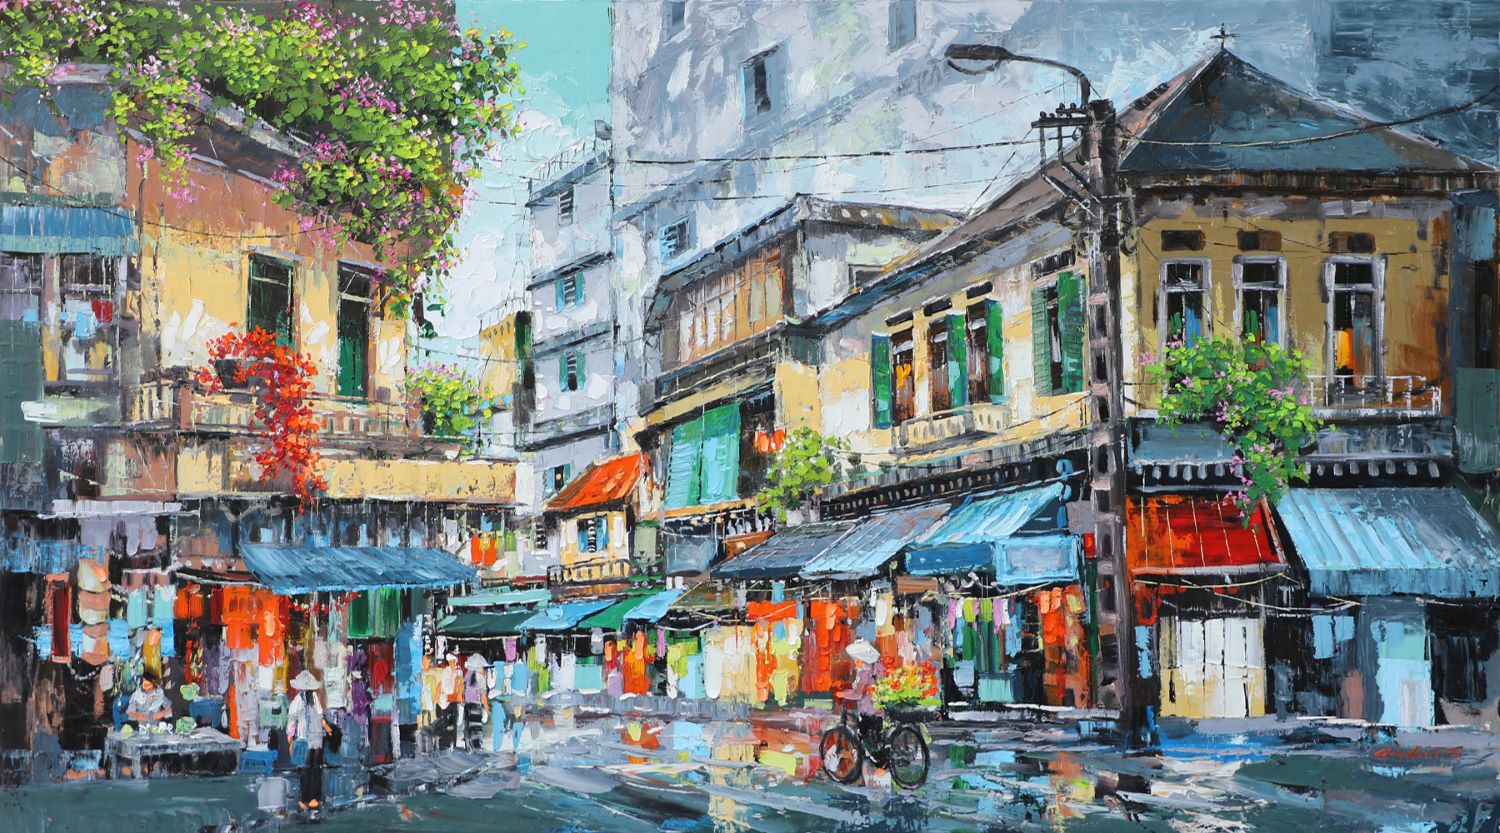 Street in Spring - Vietnamese Oil Painting by Artist Giap Van Tuan